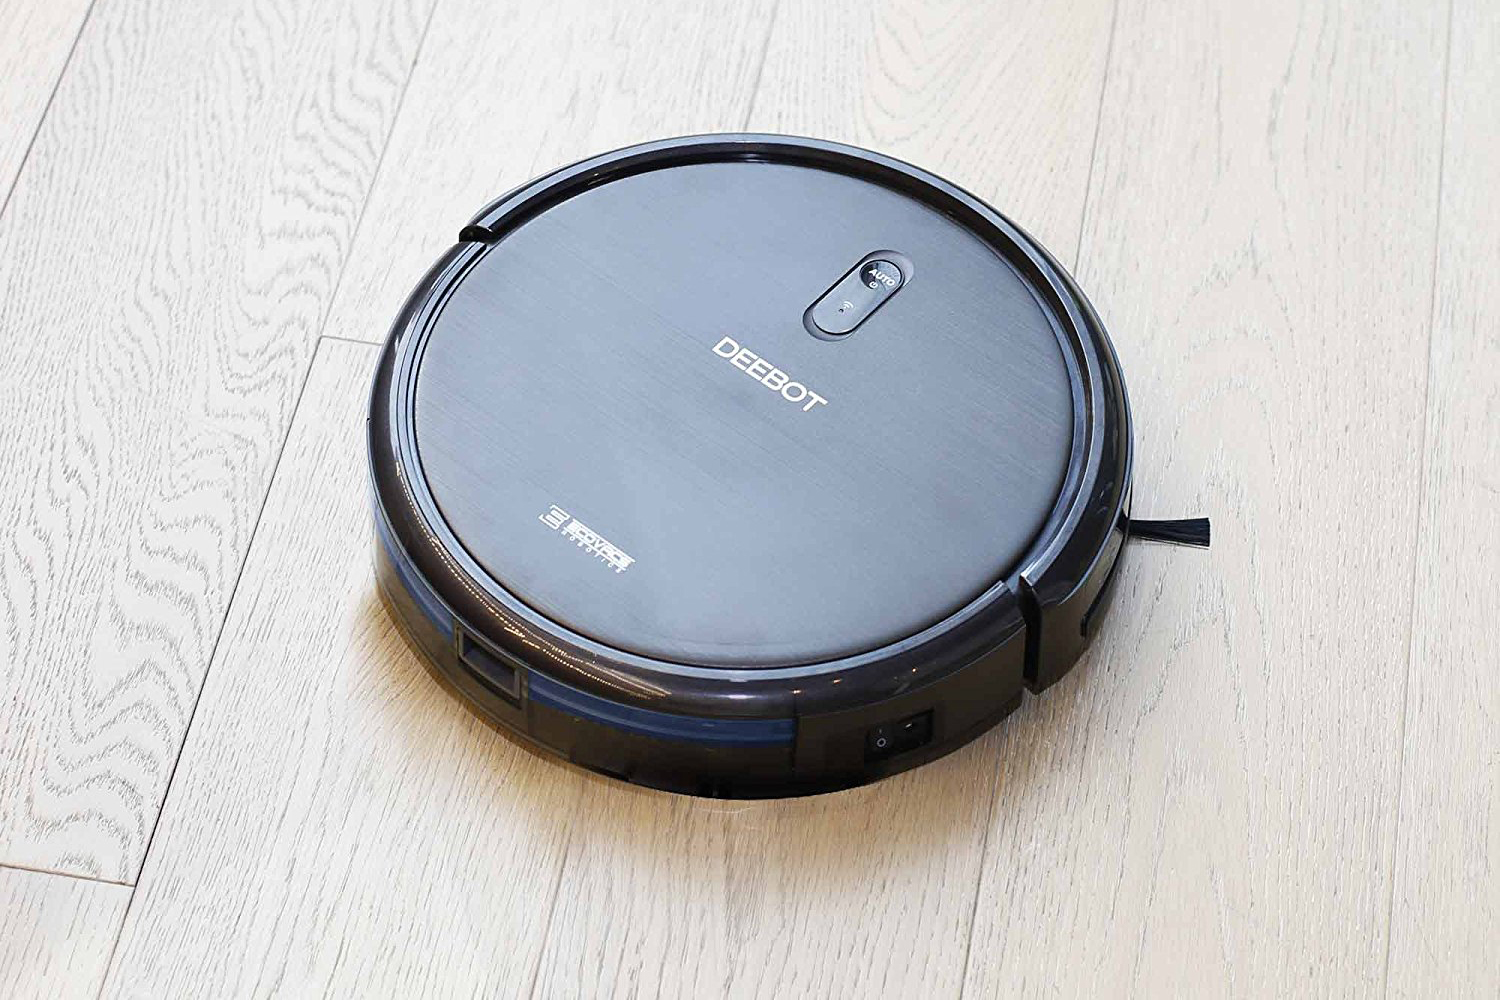 iRobot Roomba deals